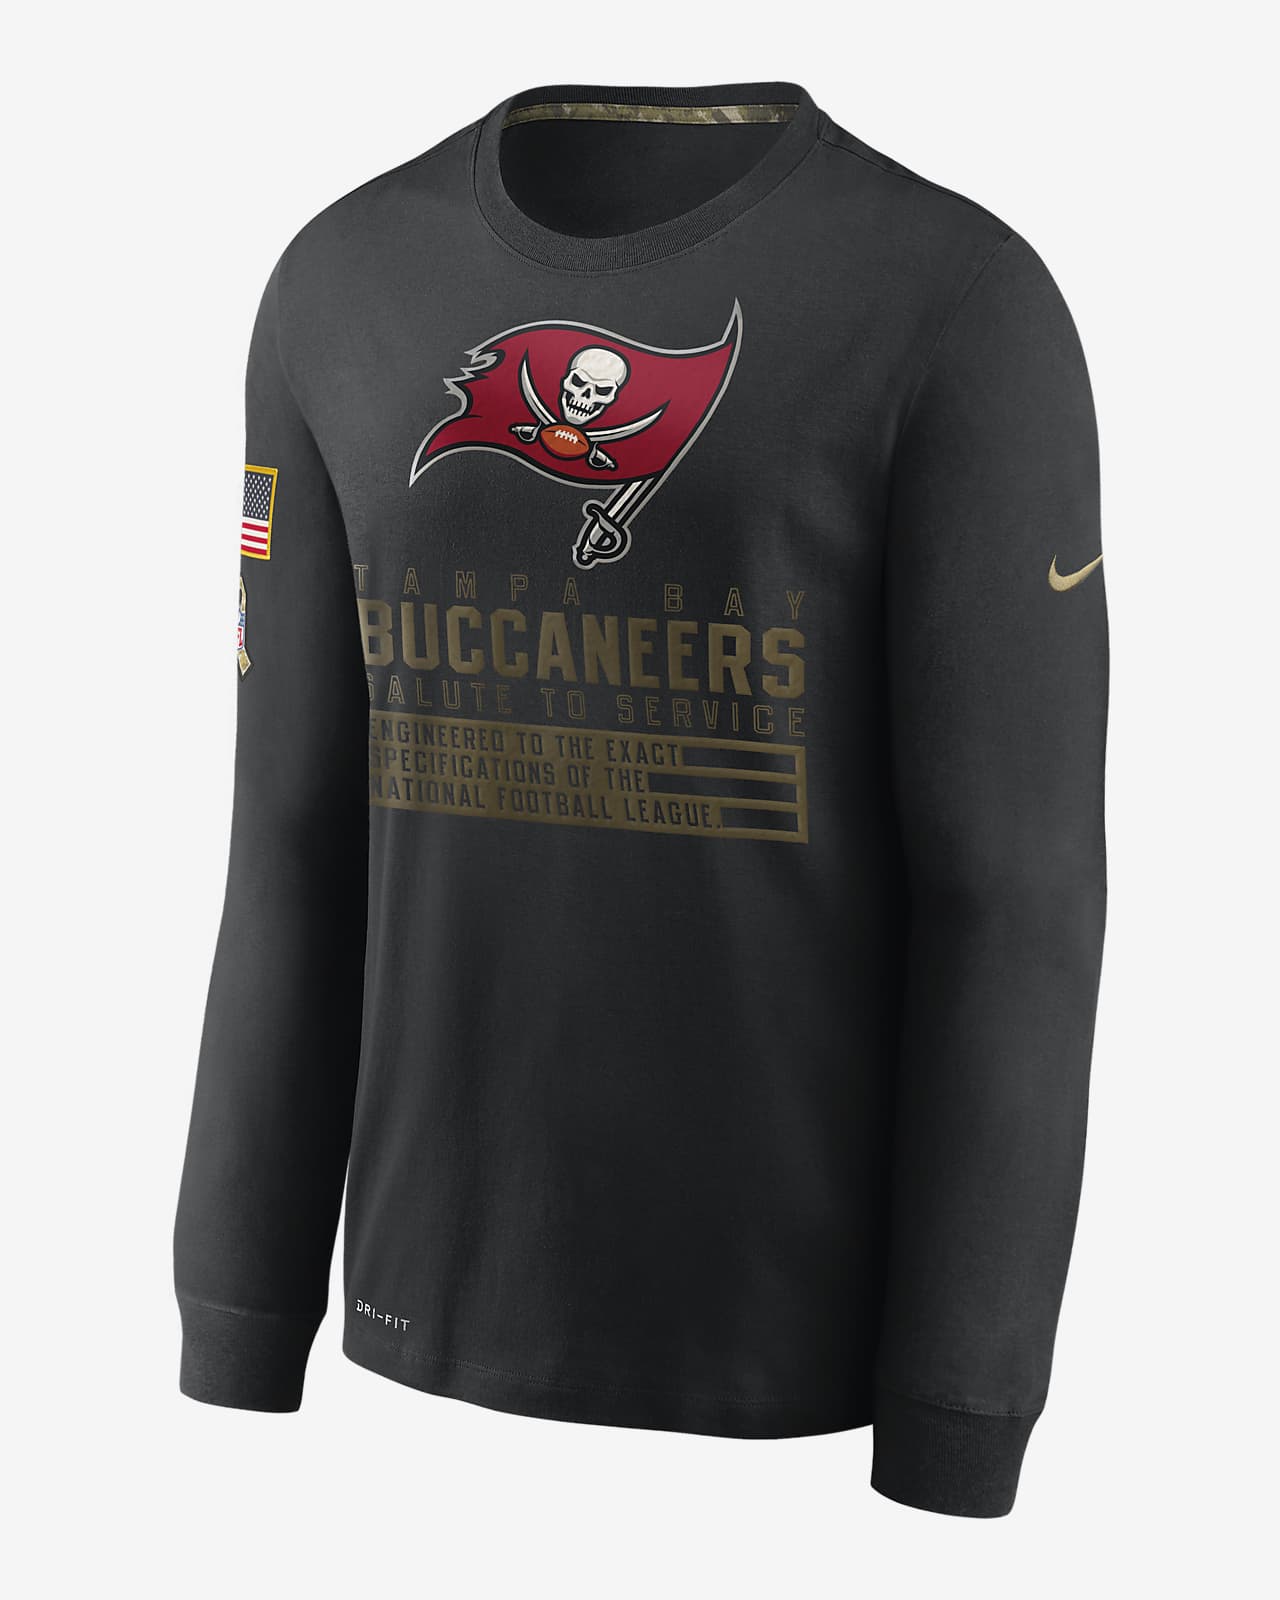 buccaneers jerseys for sale